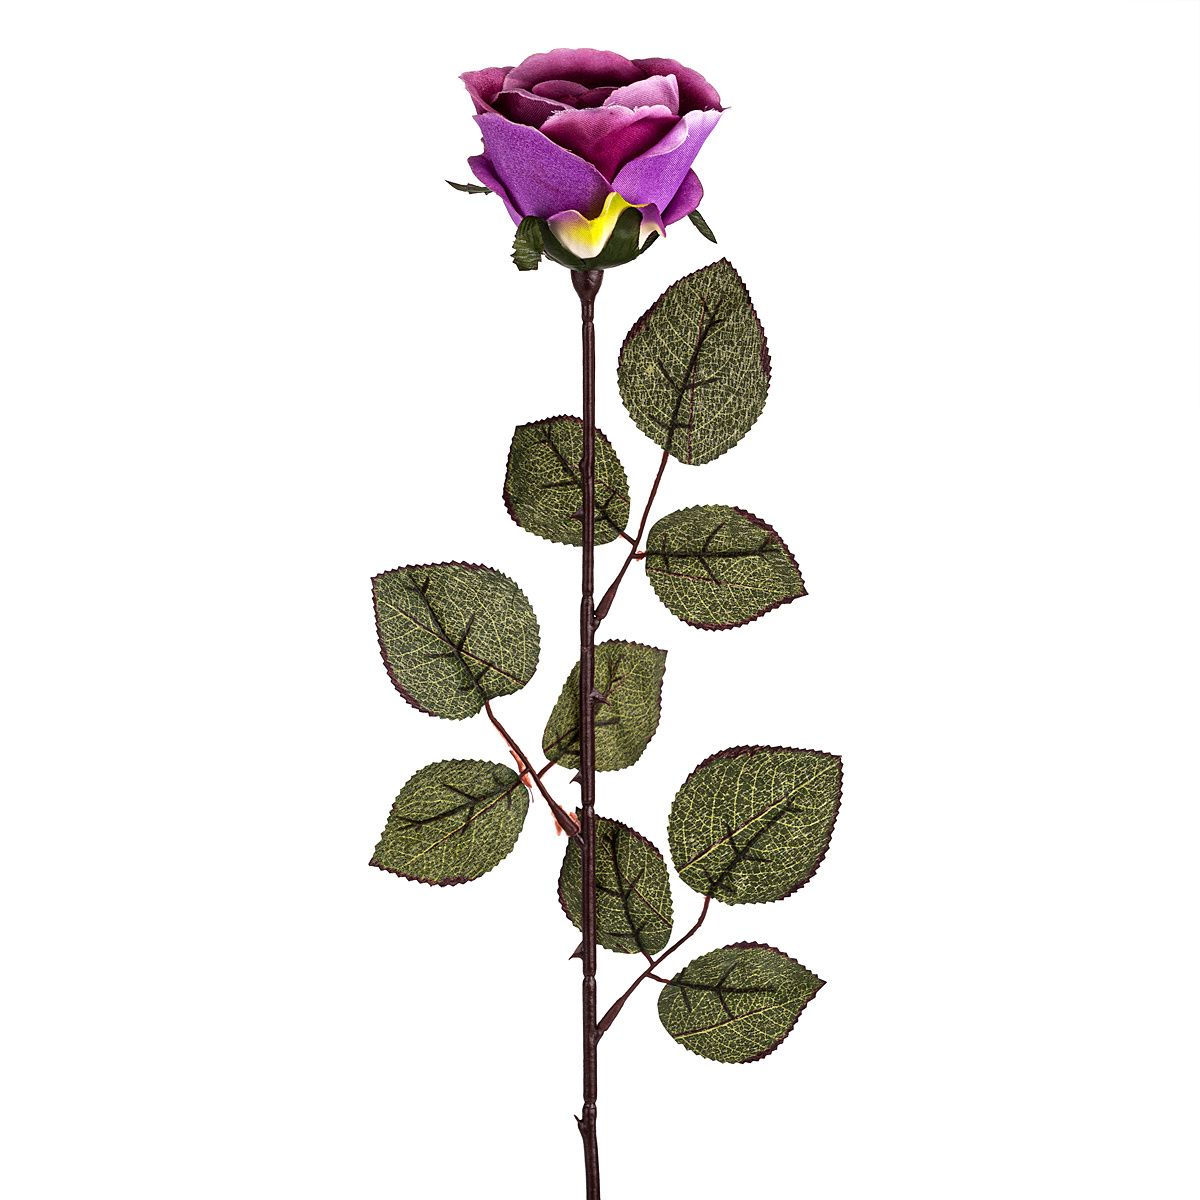 Umělá květina Růže velkokvětá 72 cm, fialová - 4home.cz